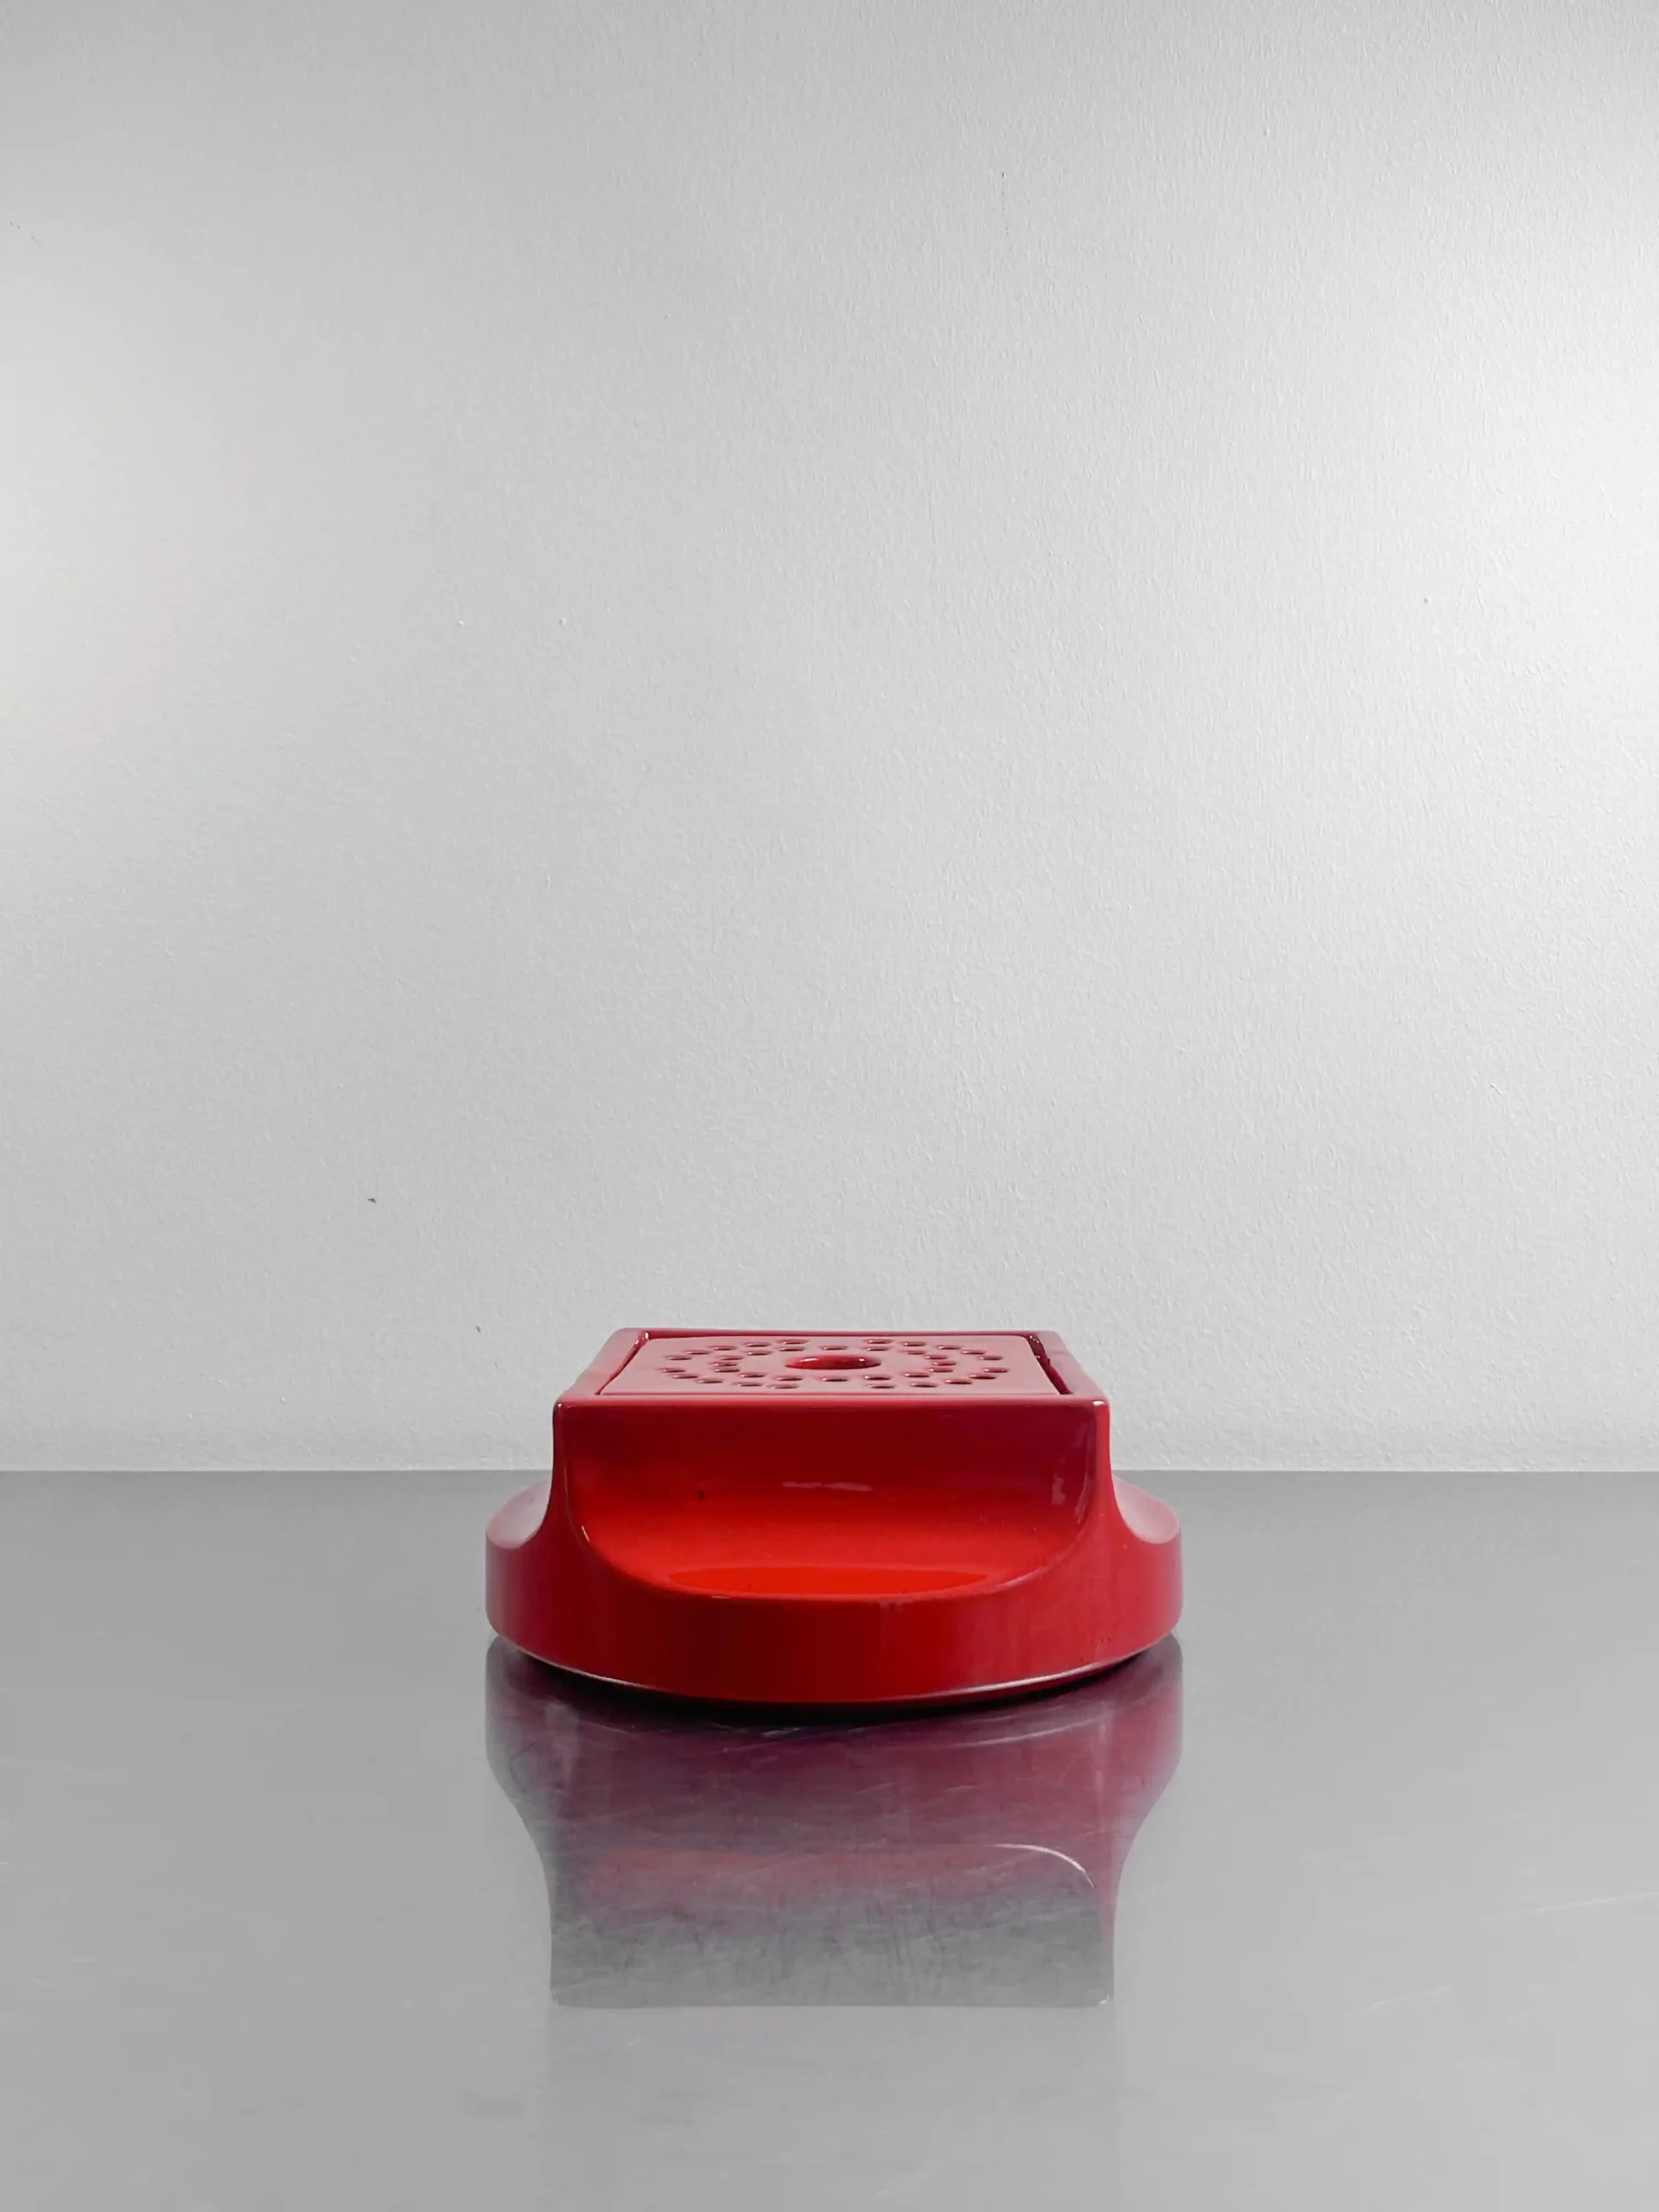 posacenere Gabbianelli progettato dallo studio OPI e realizzato negli anni '60, con struttura e coperchio in ceramica smaltata di un vibrante rosso.